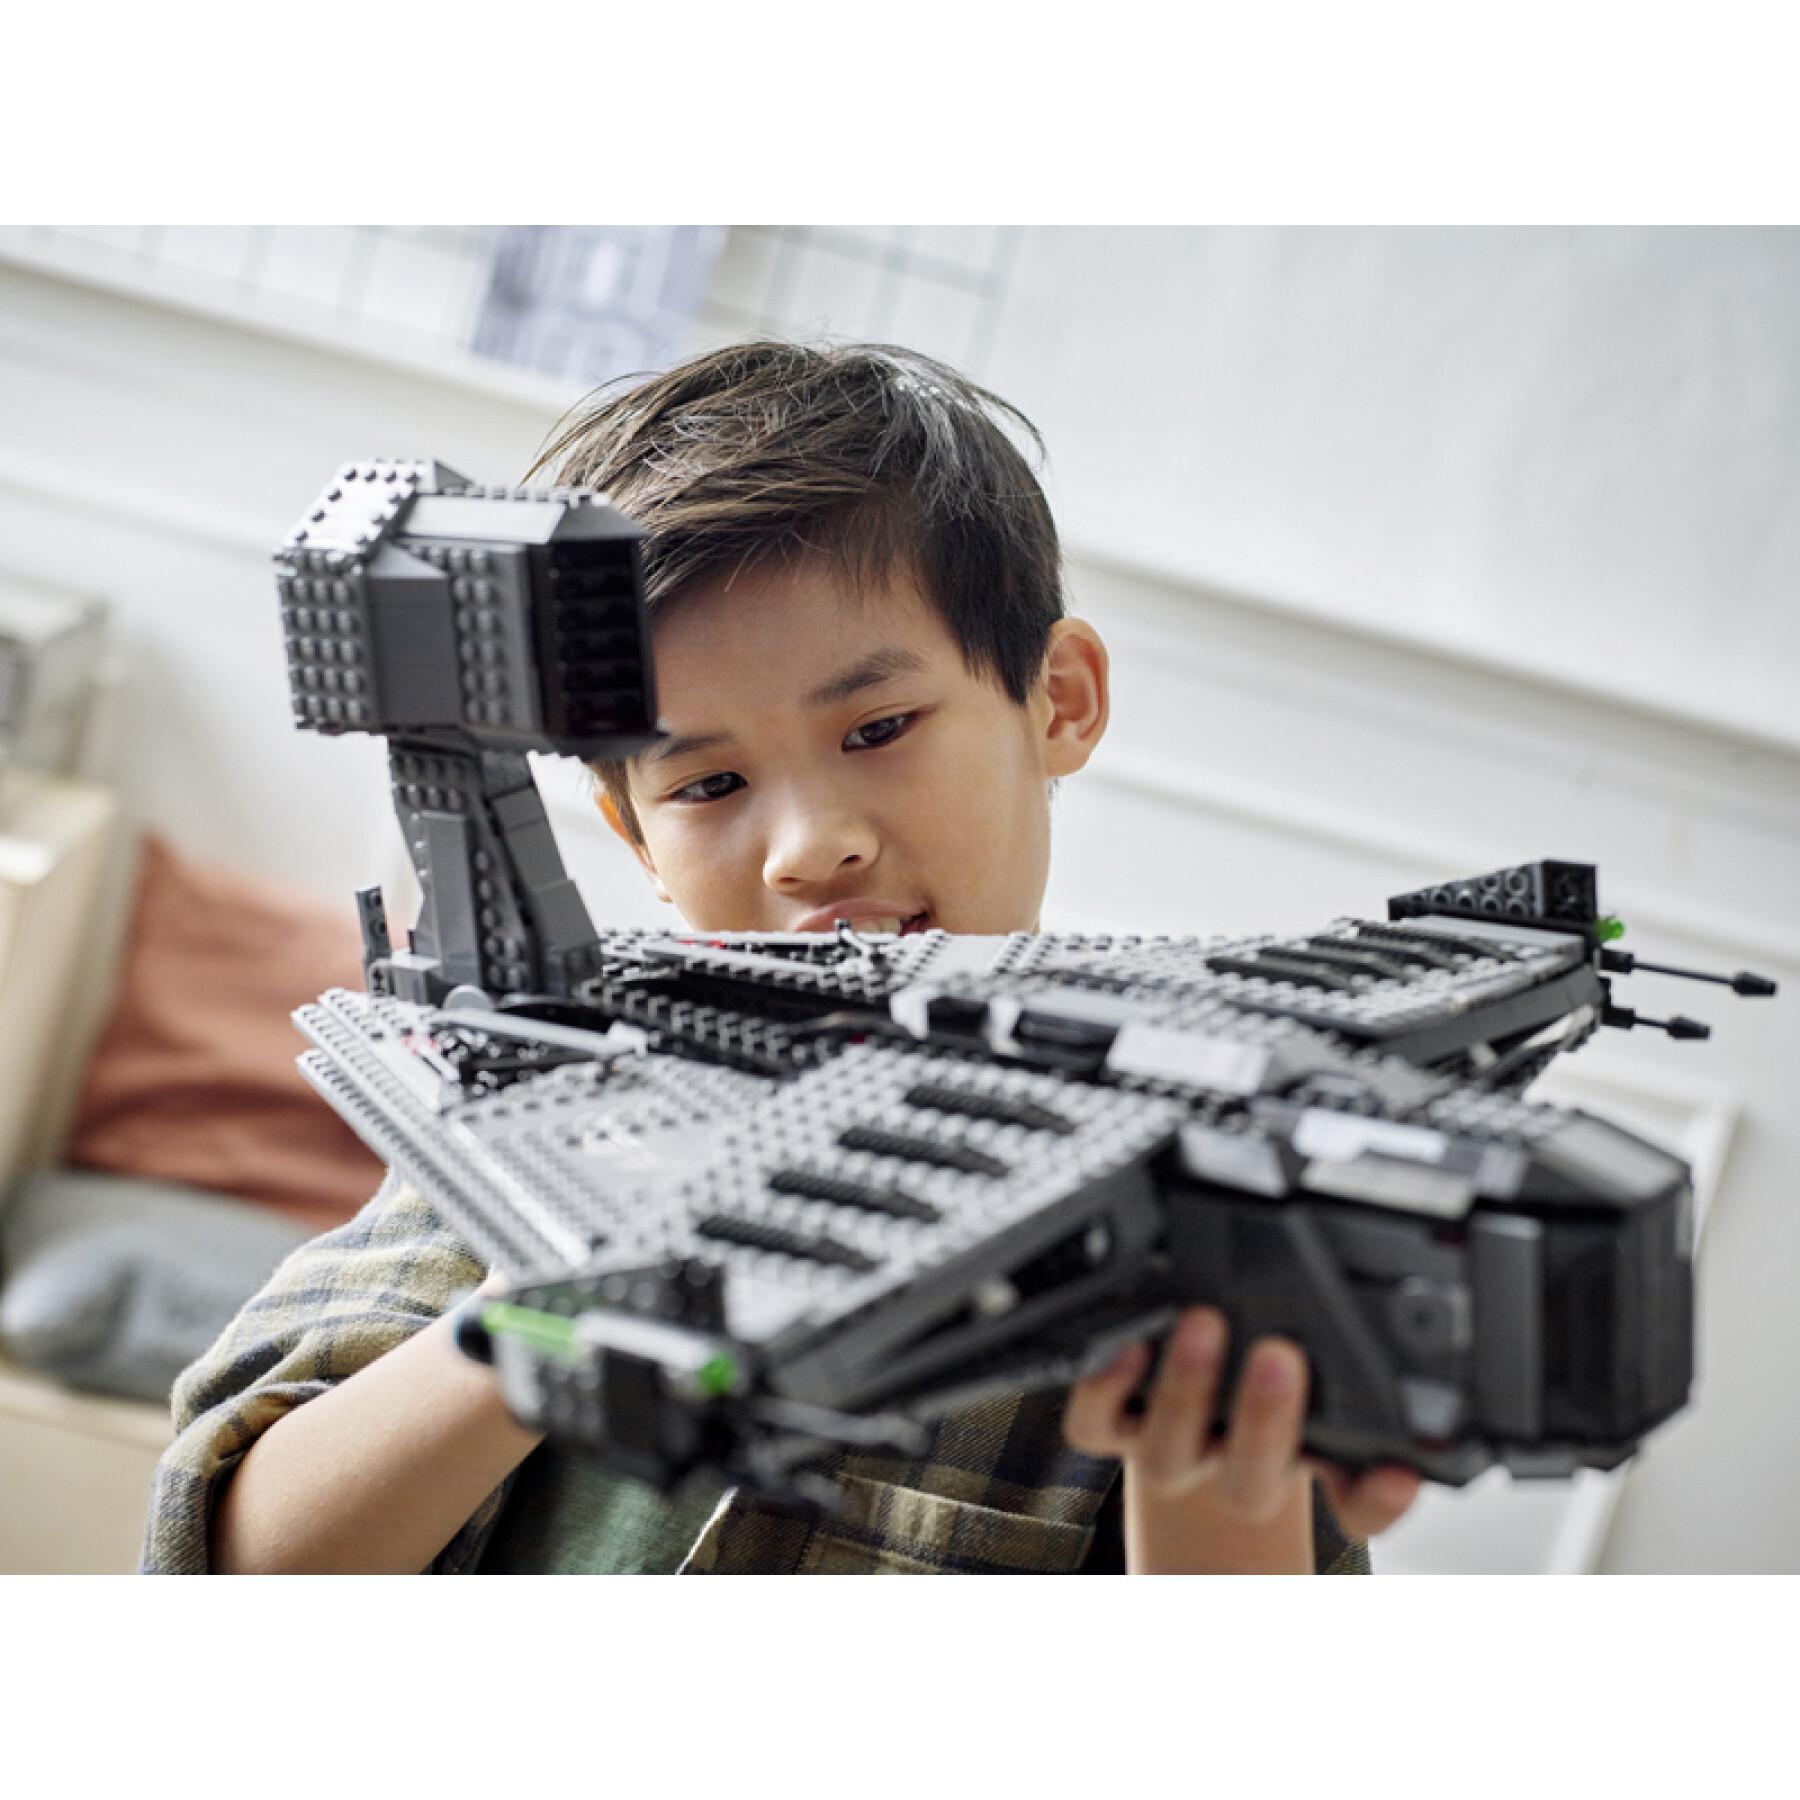 Konstruktionsspiele rechtfertigen Lego Swars